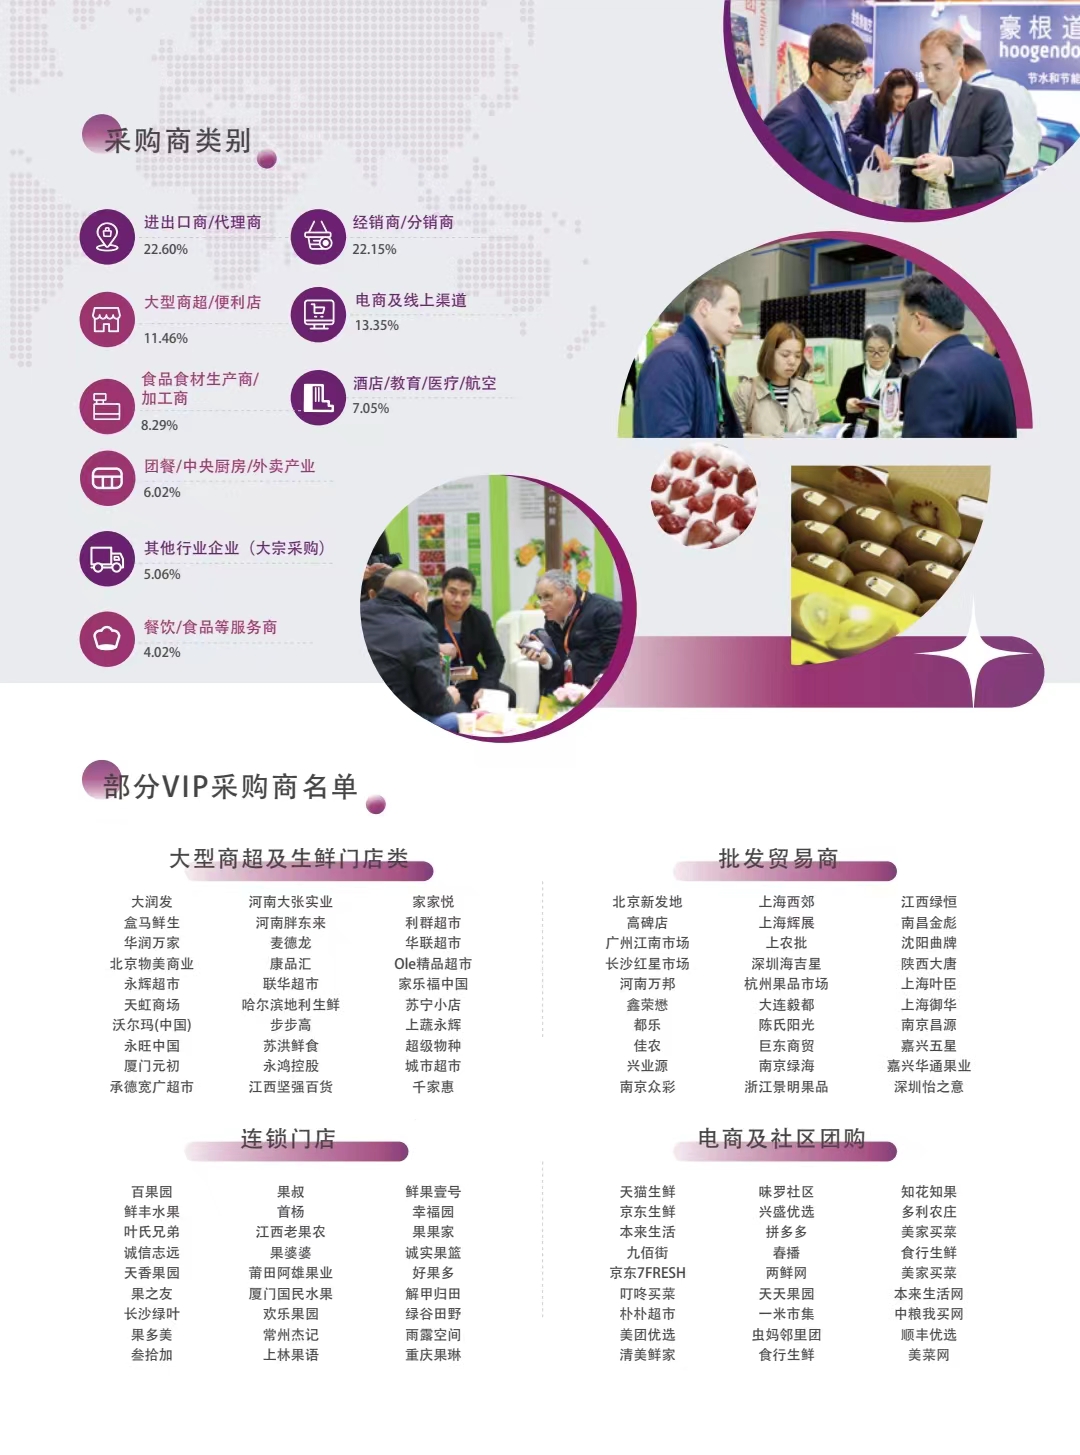 2023中食展（广州）| Asia Fresh广州（江南）国际果蔬产业博览会